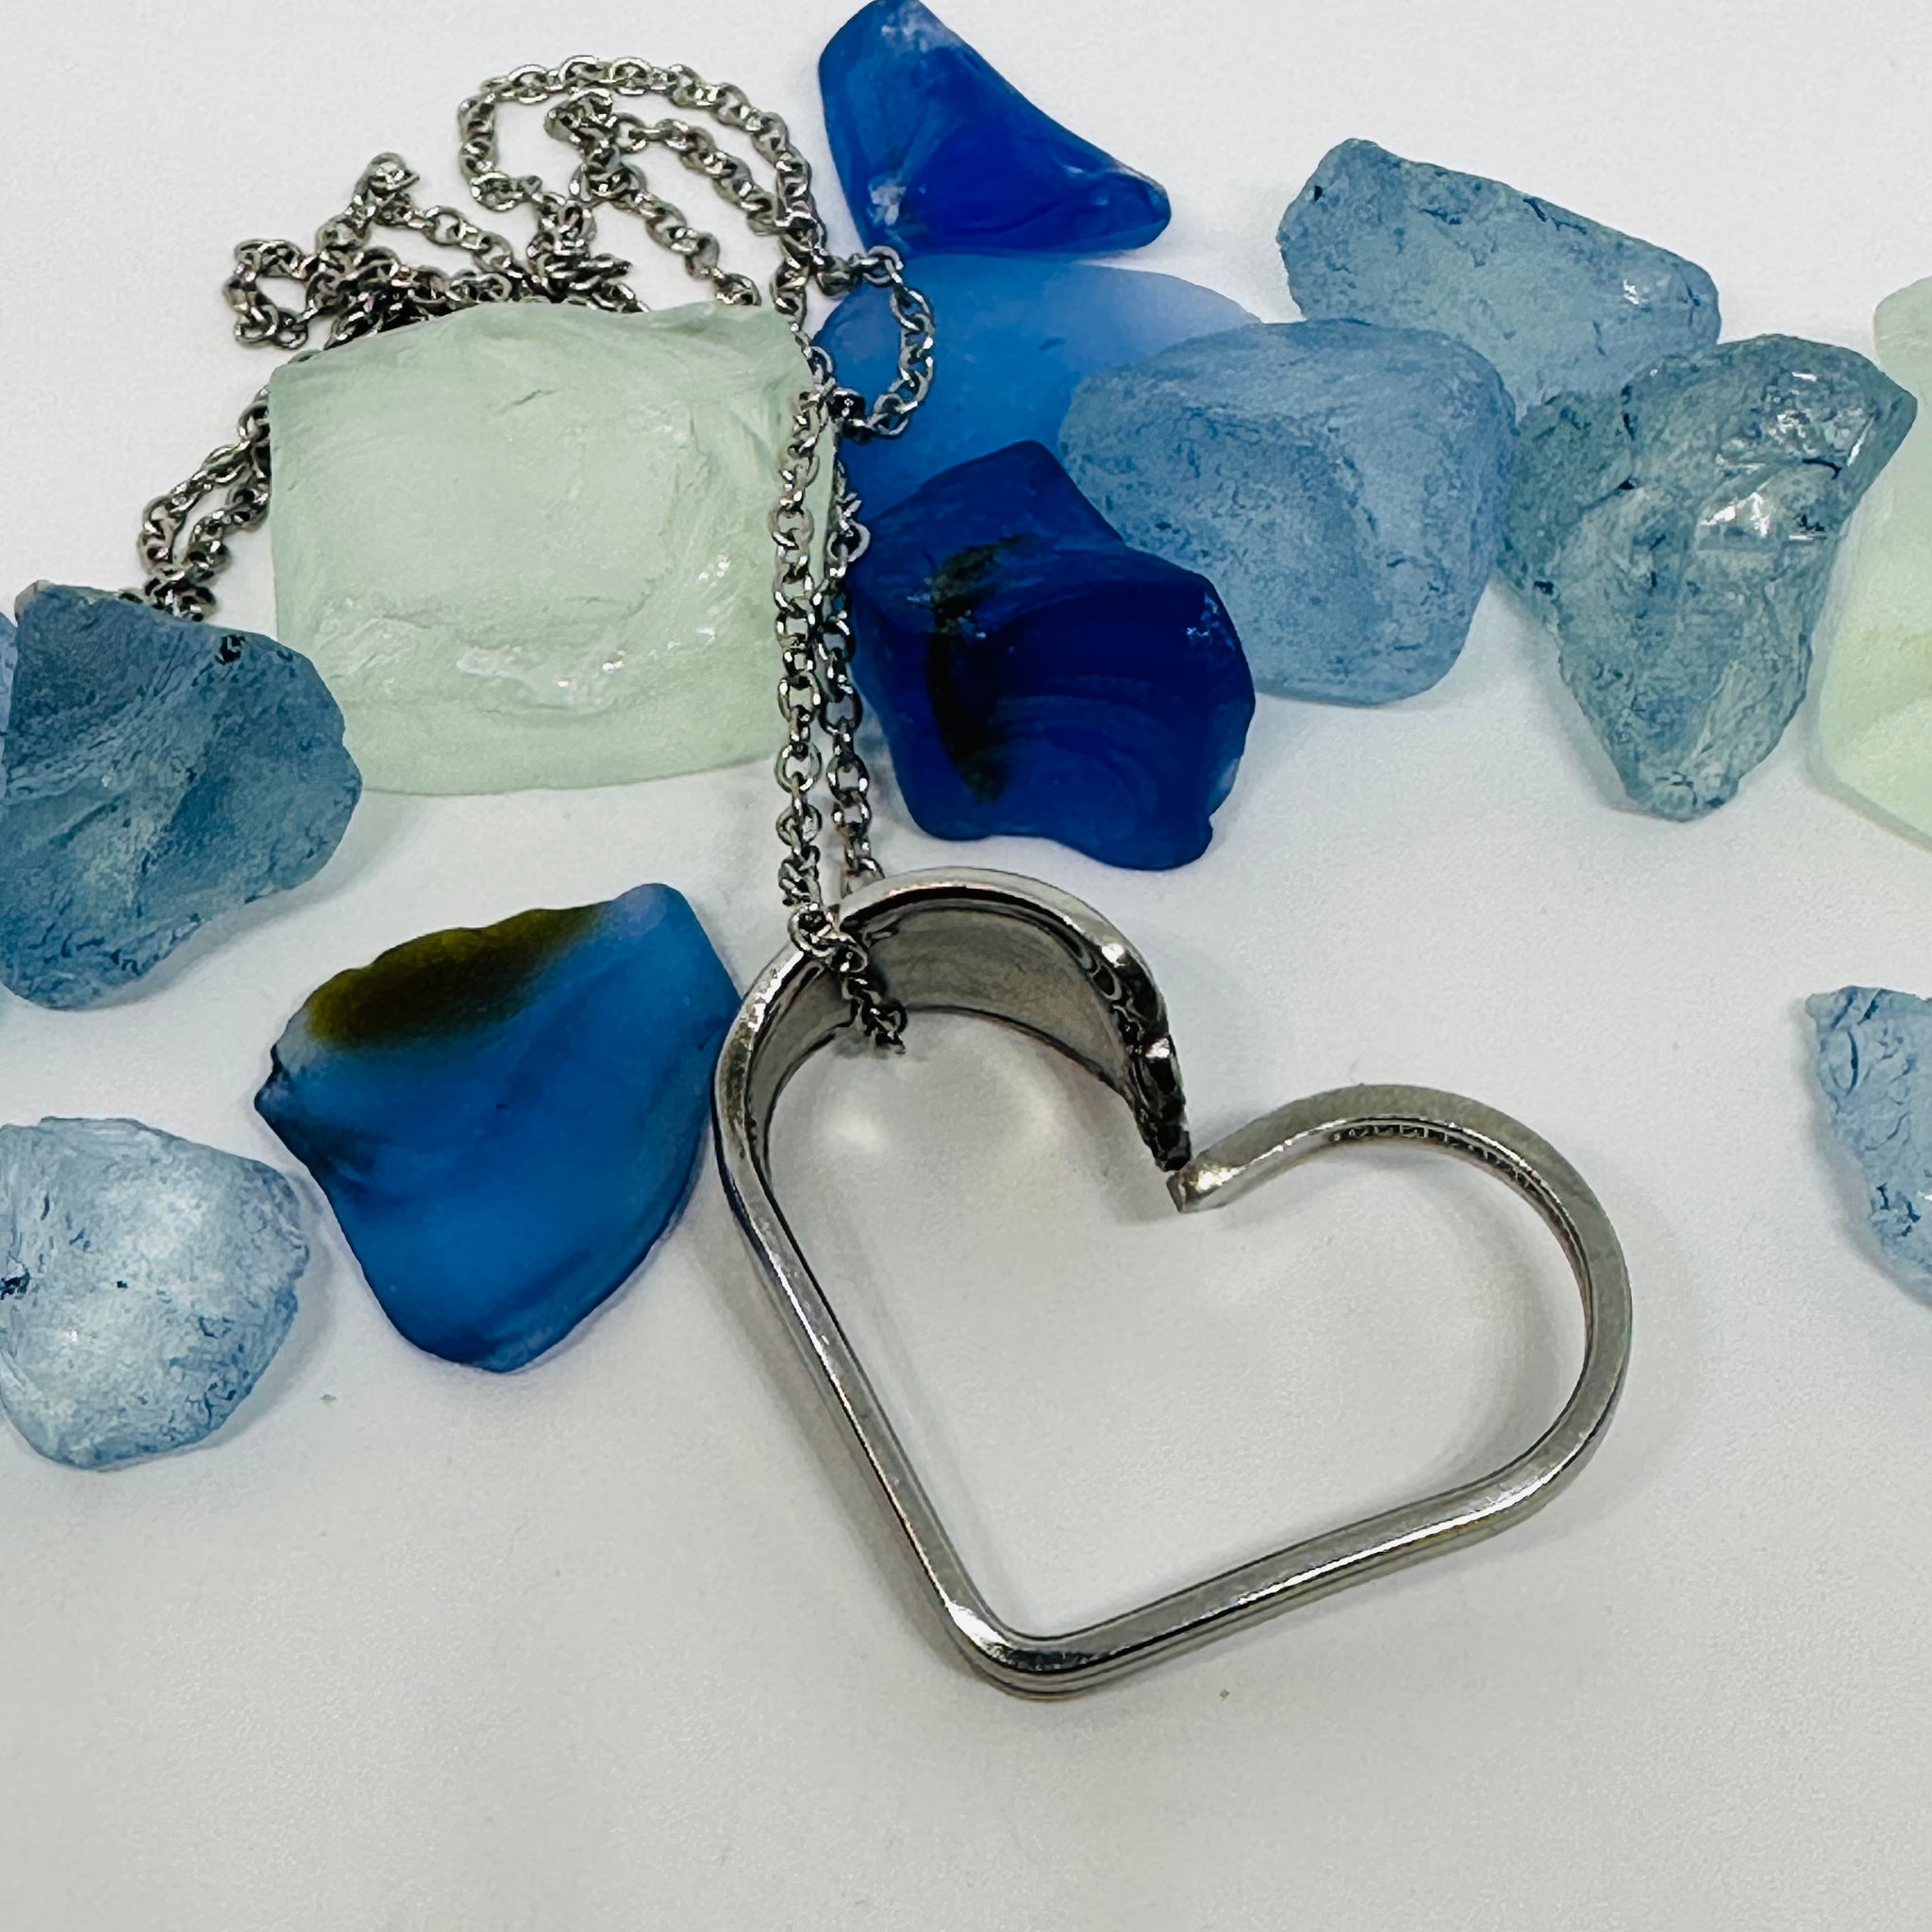 Custom Order for Jacki - Heart Pendant from Baby Spoon | Heart-shaped Pendant | Heirloom